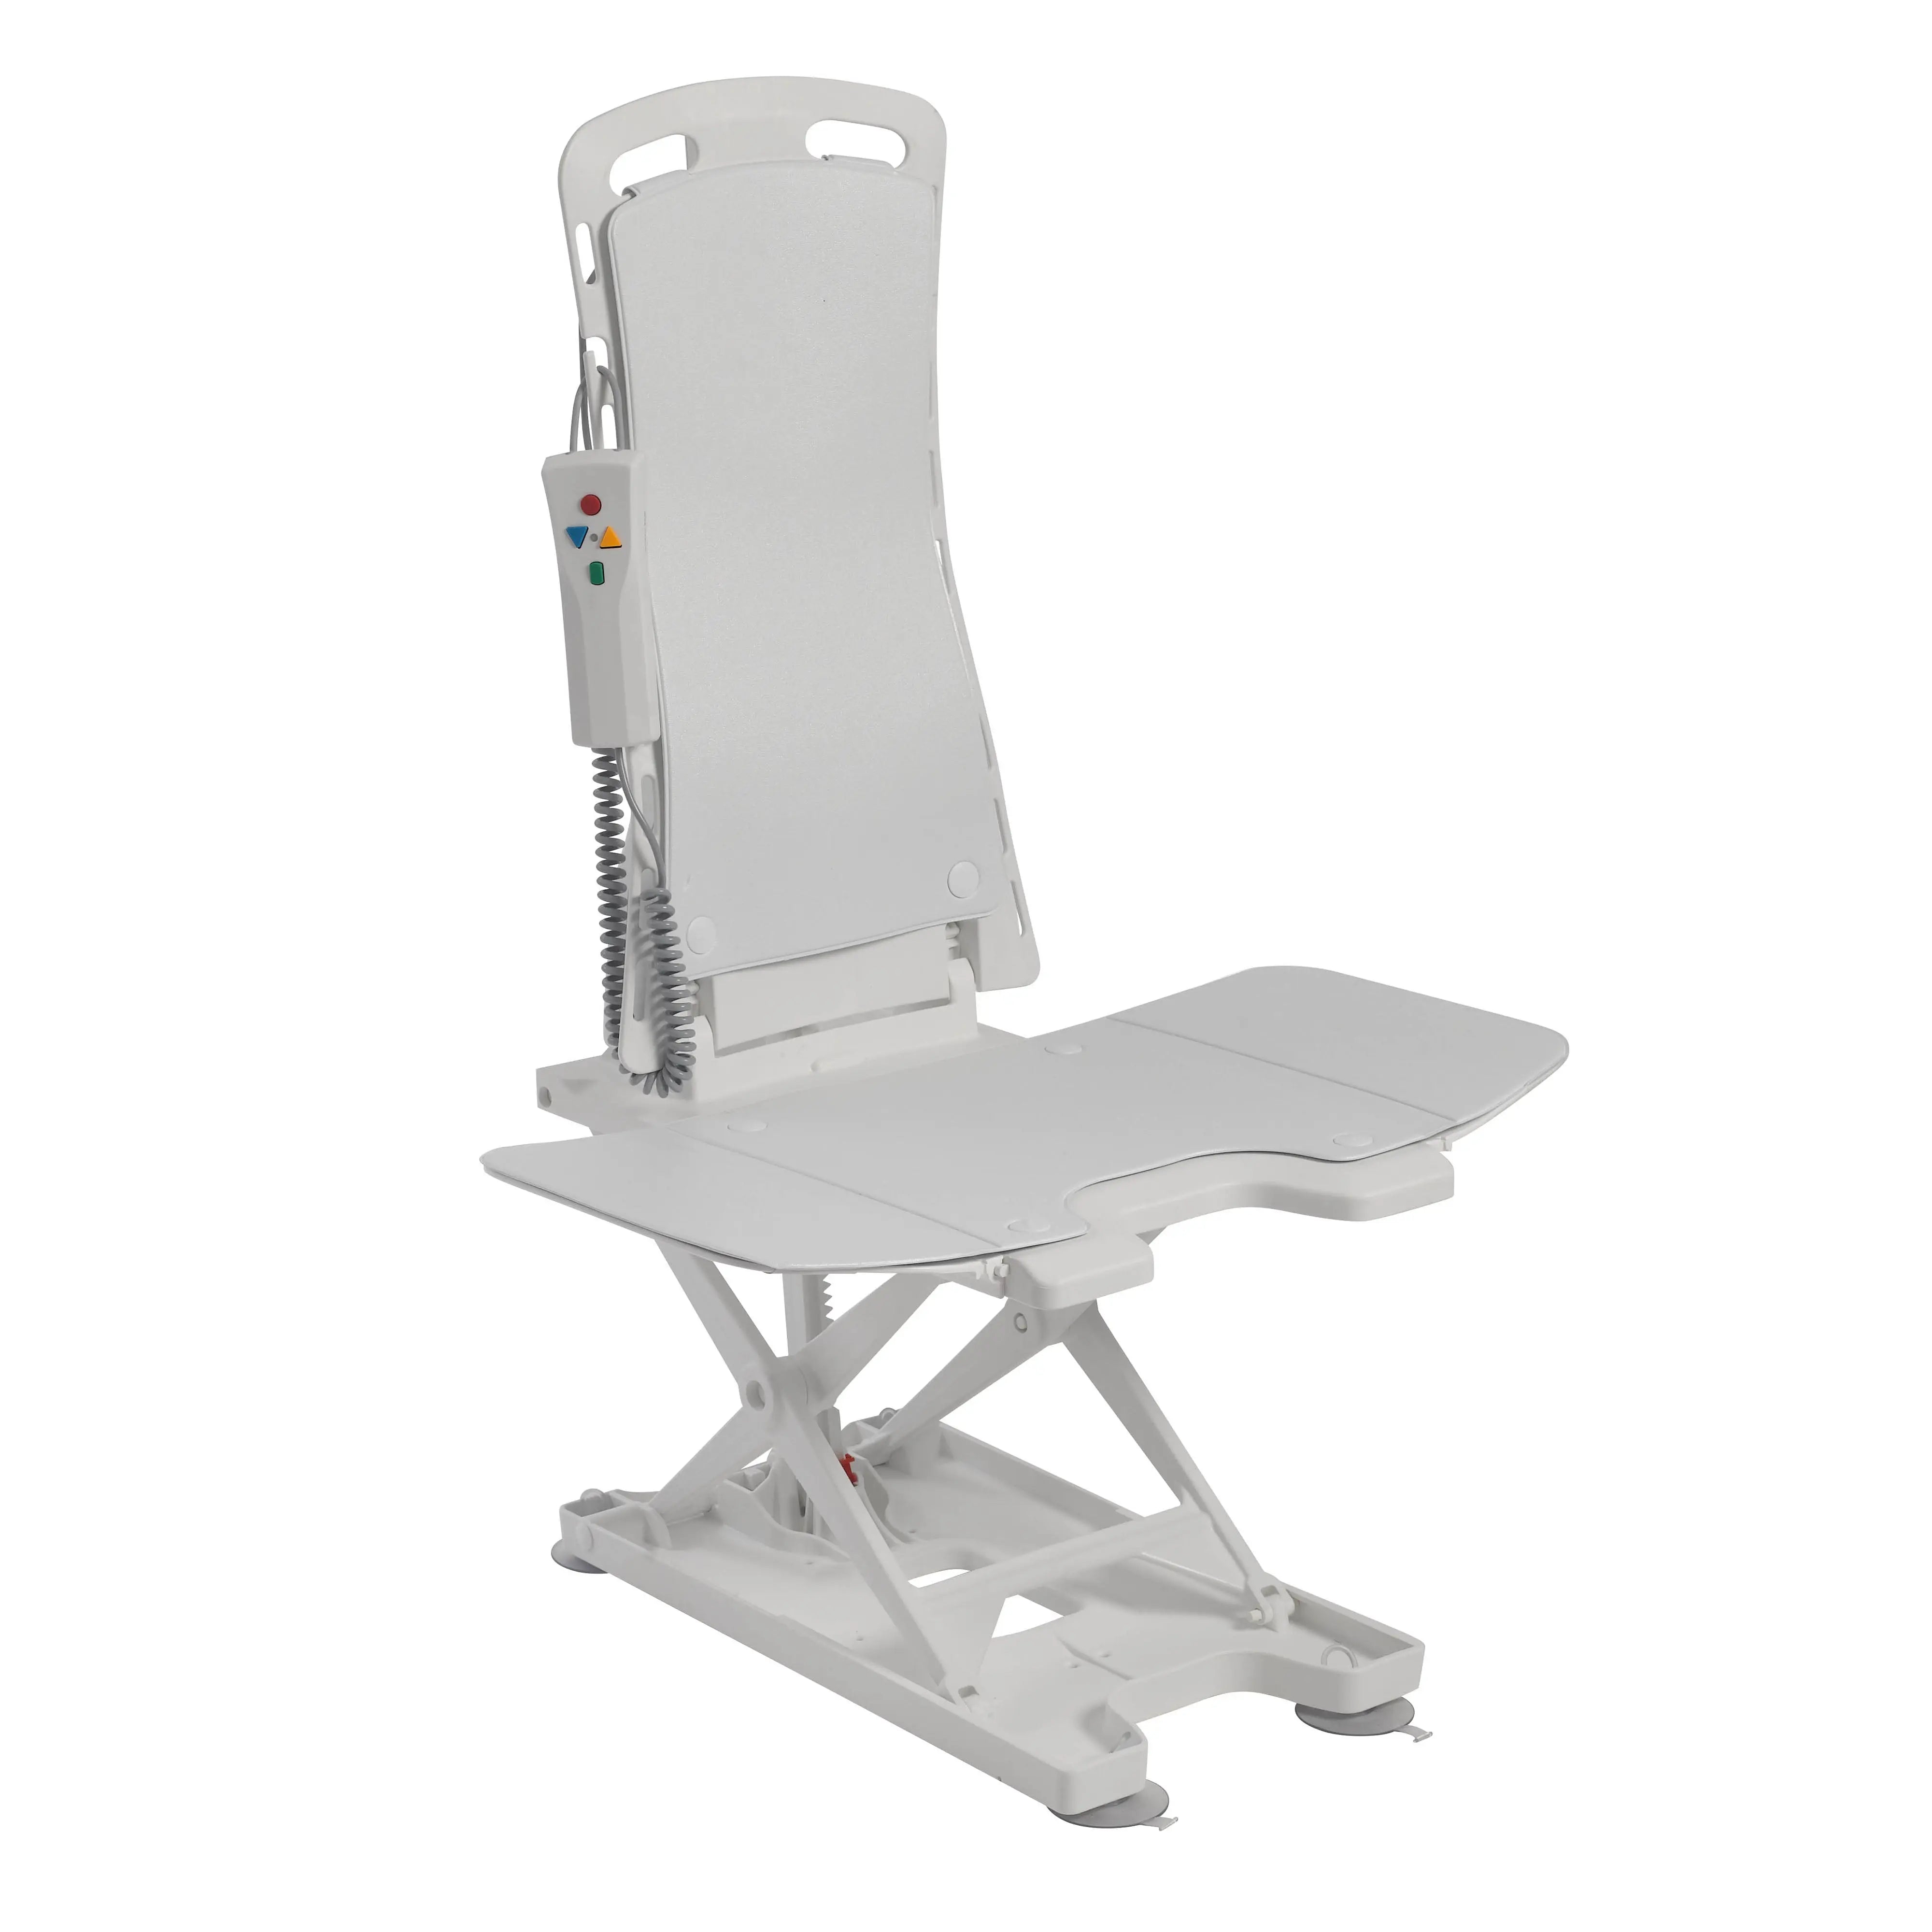 Bellavita Auto Bath Tub Chair Seat Lift - Home Health Store Inc